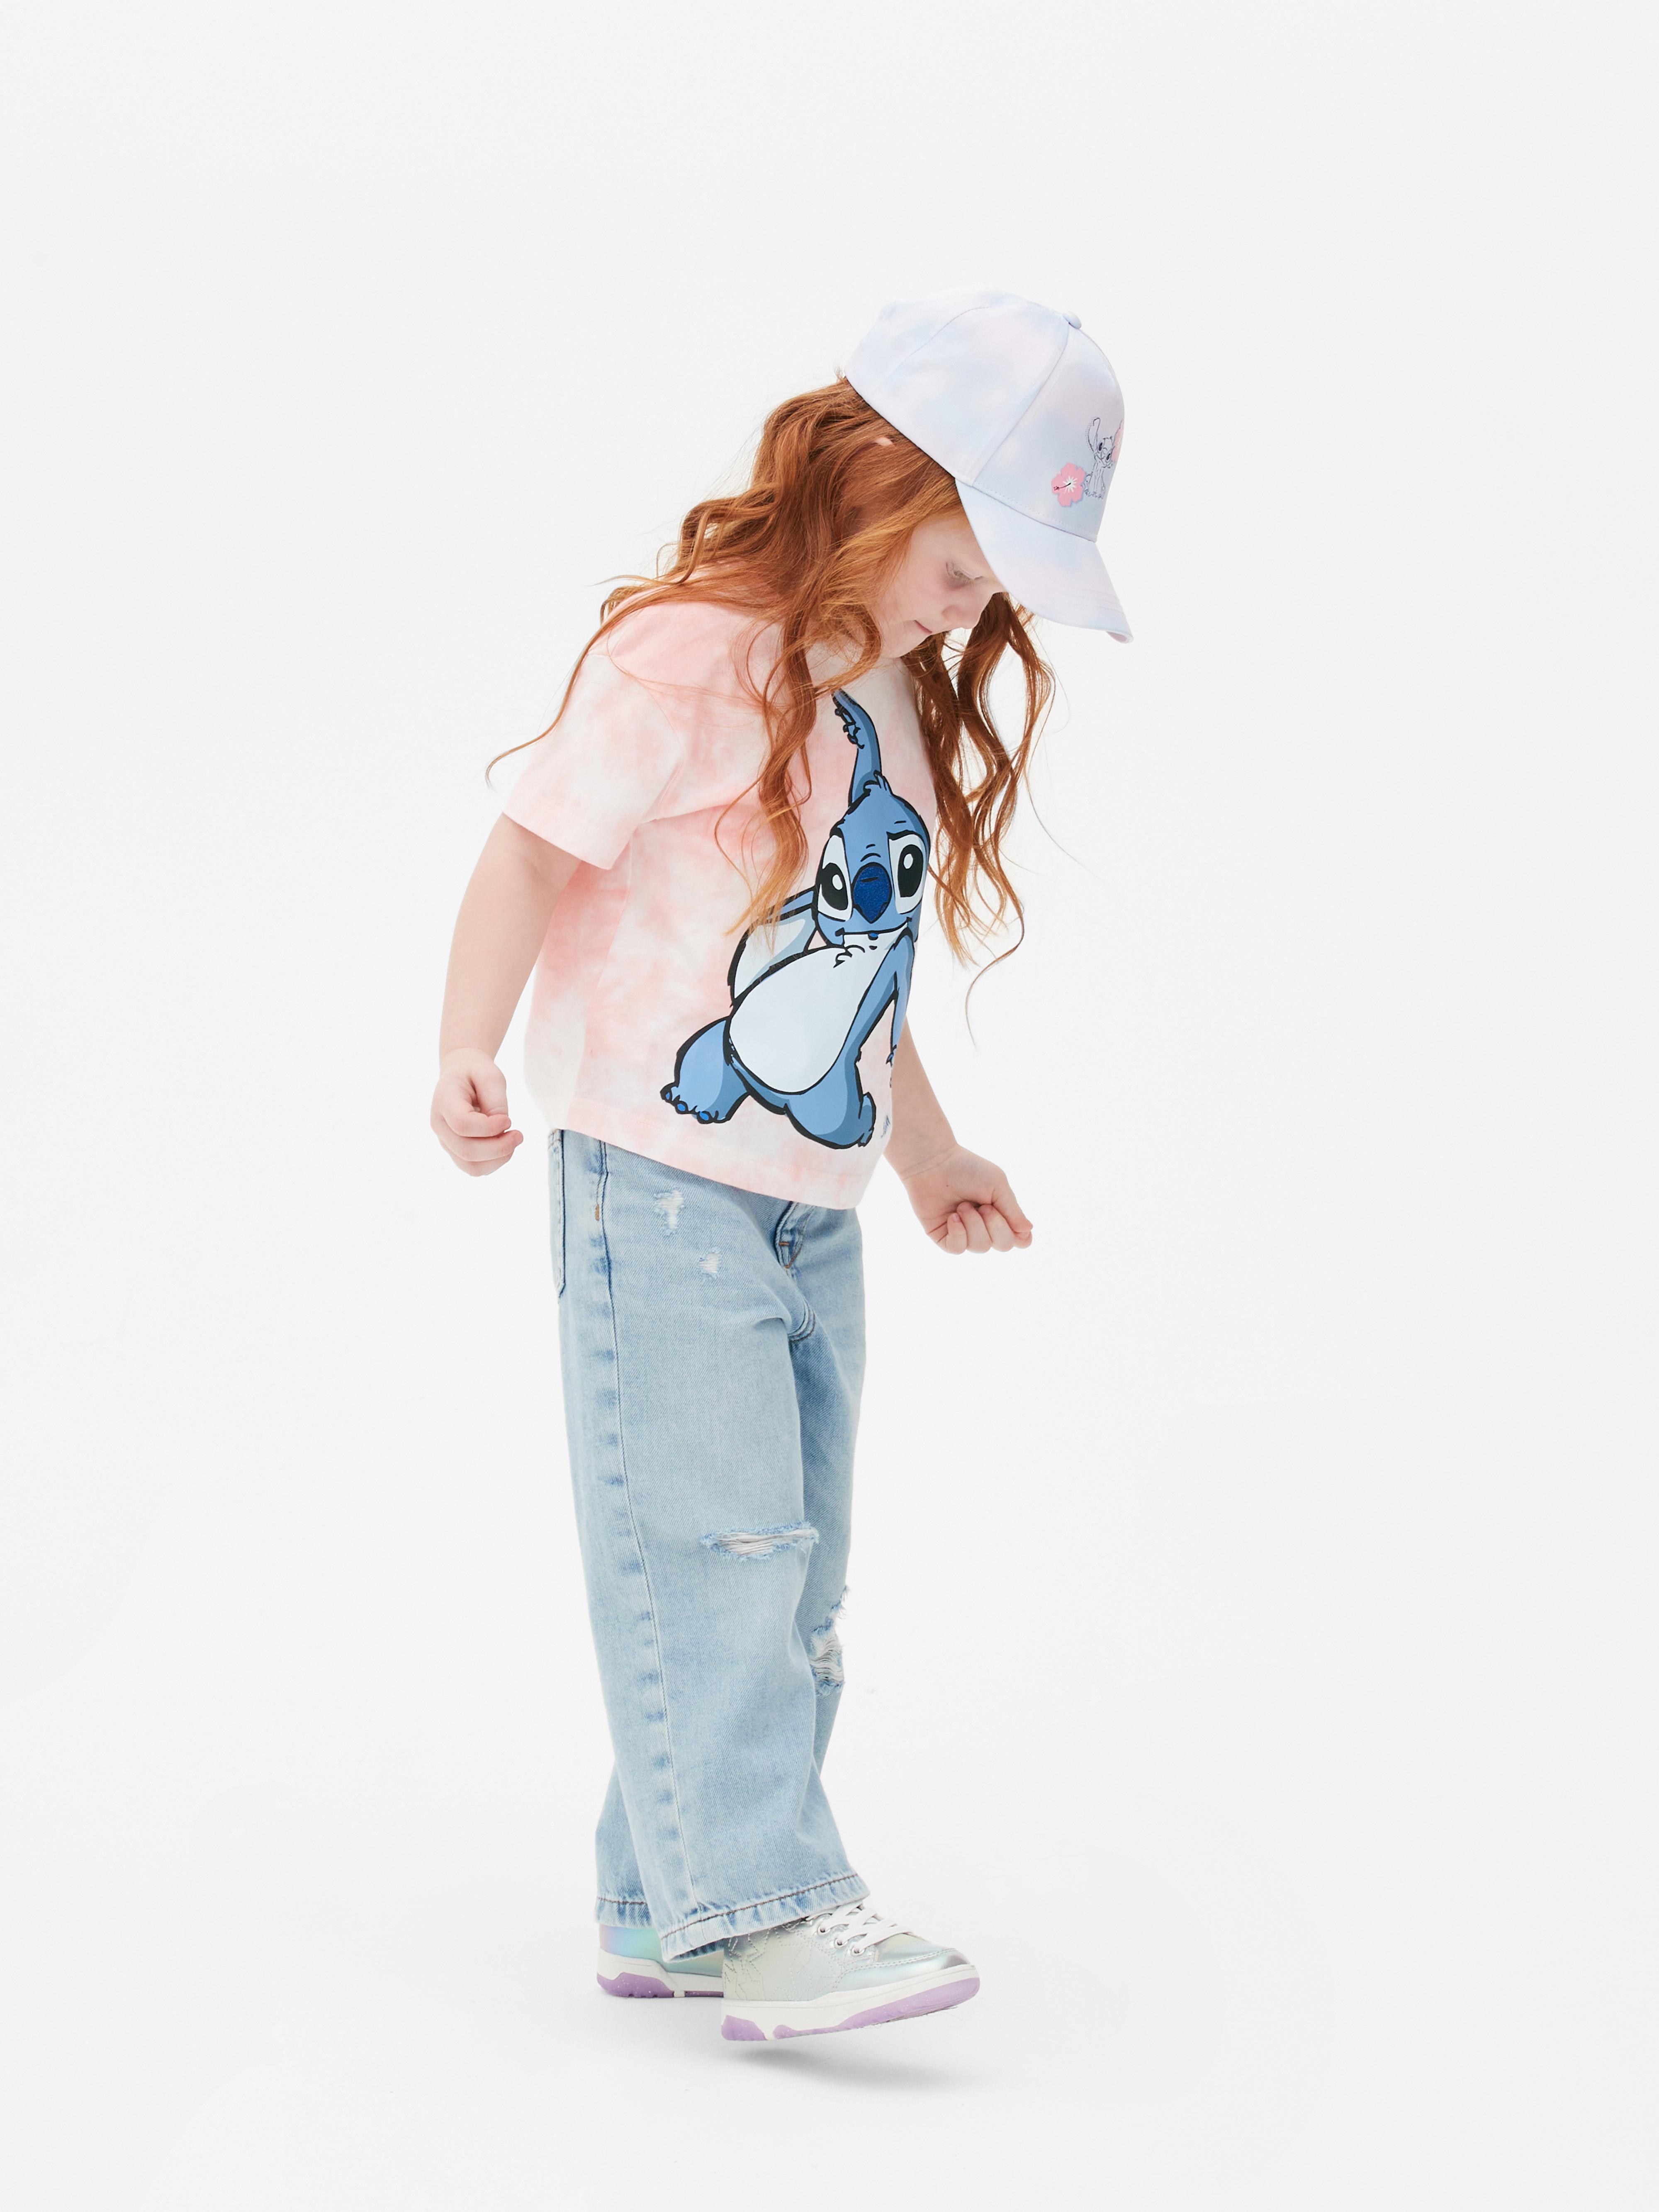 T-shirt Lilo & Stitch da Disney efeito tingimento